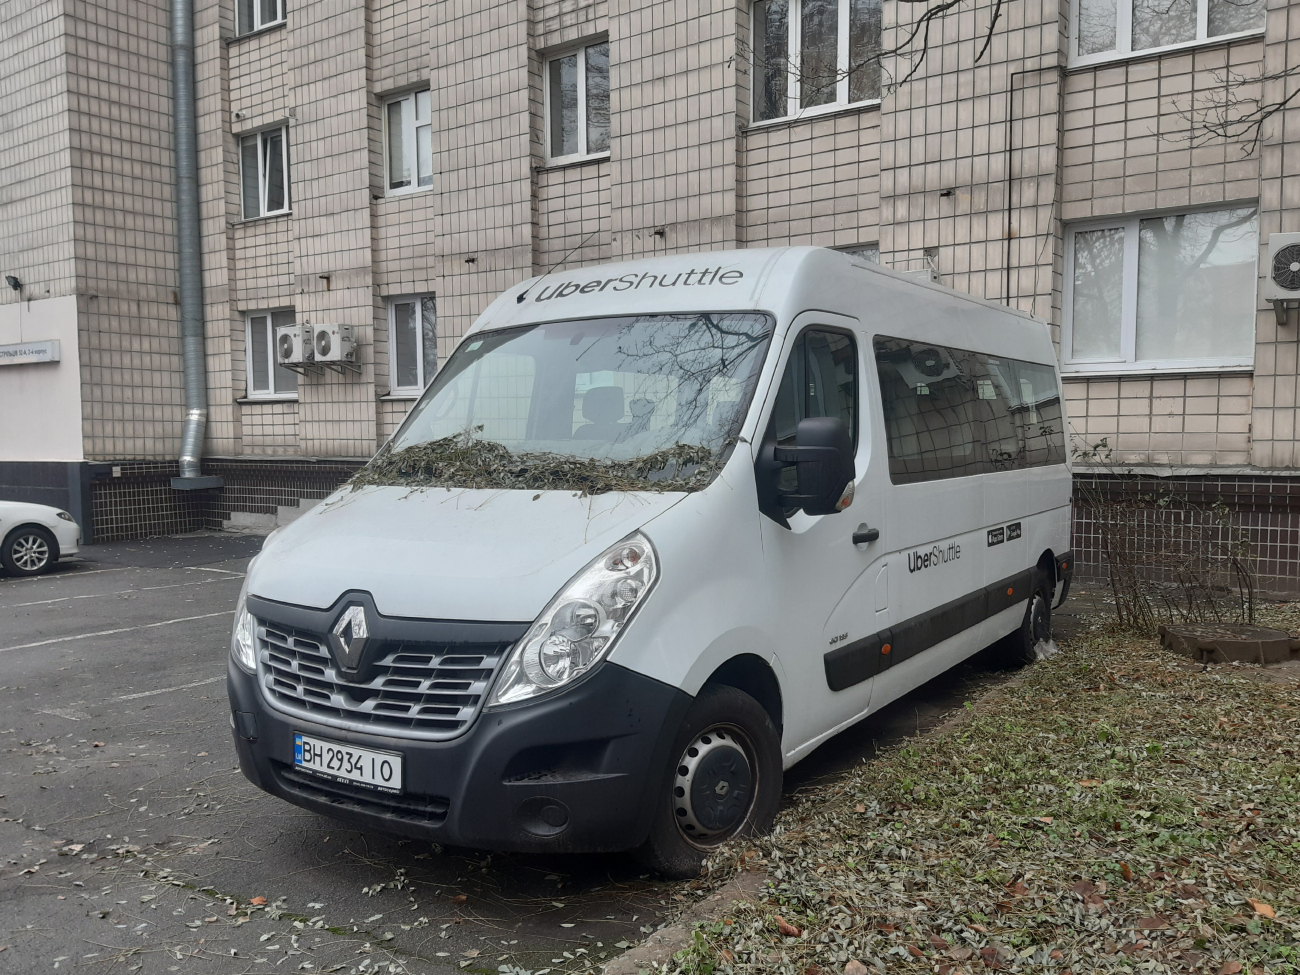 Kyiv, Renault Master No. ВН 2934 ІО